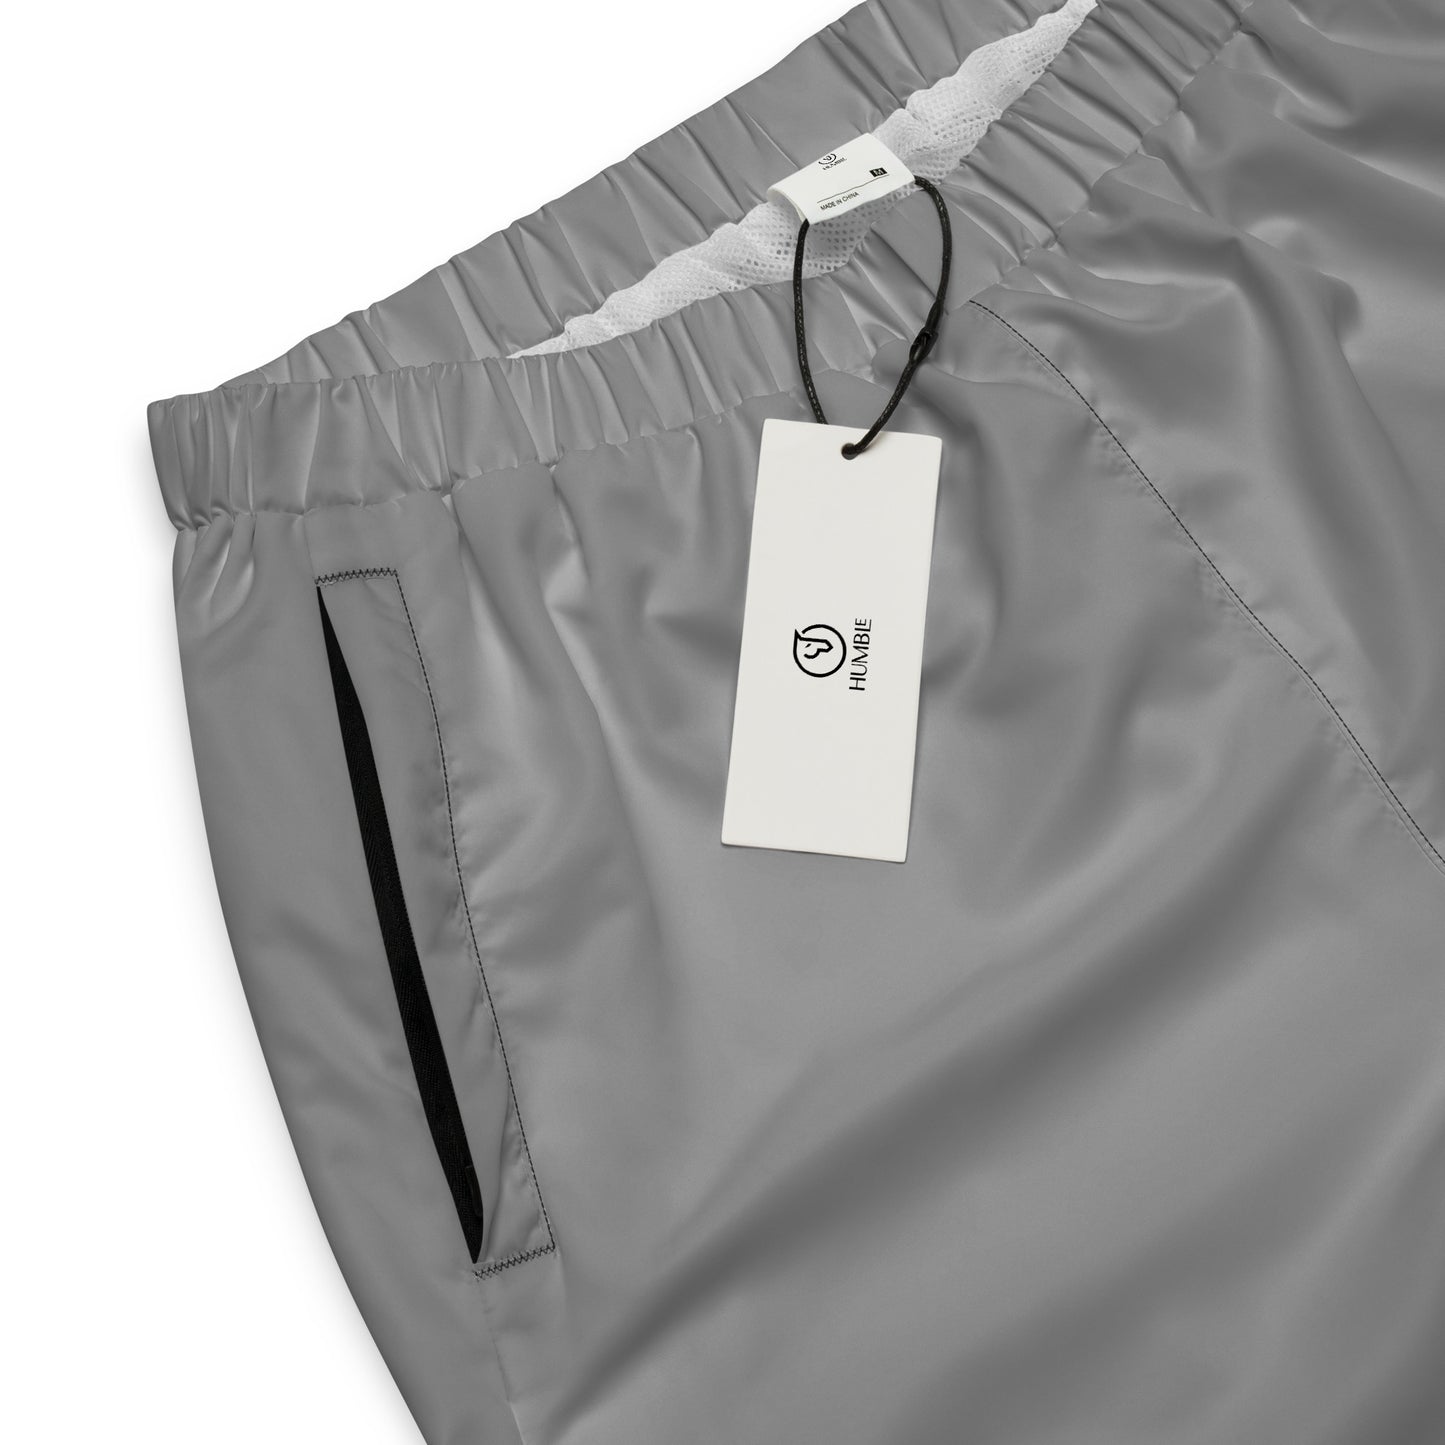 Humble Sportswear™ Men's Steel Grey Track Pants - Mireille Fine Art